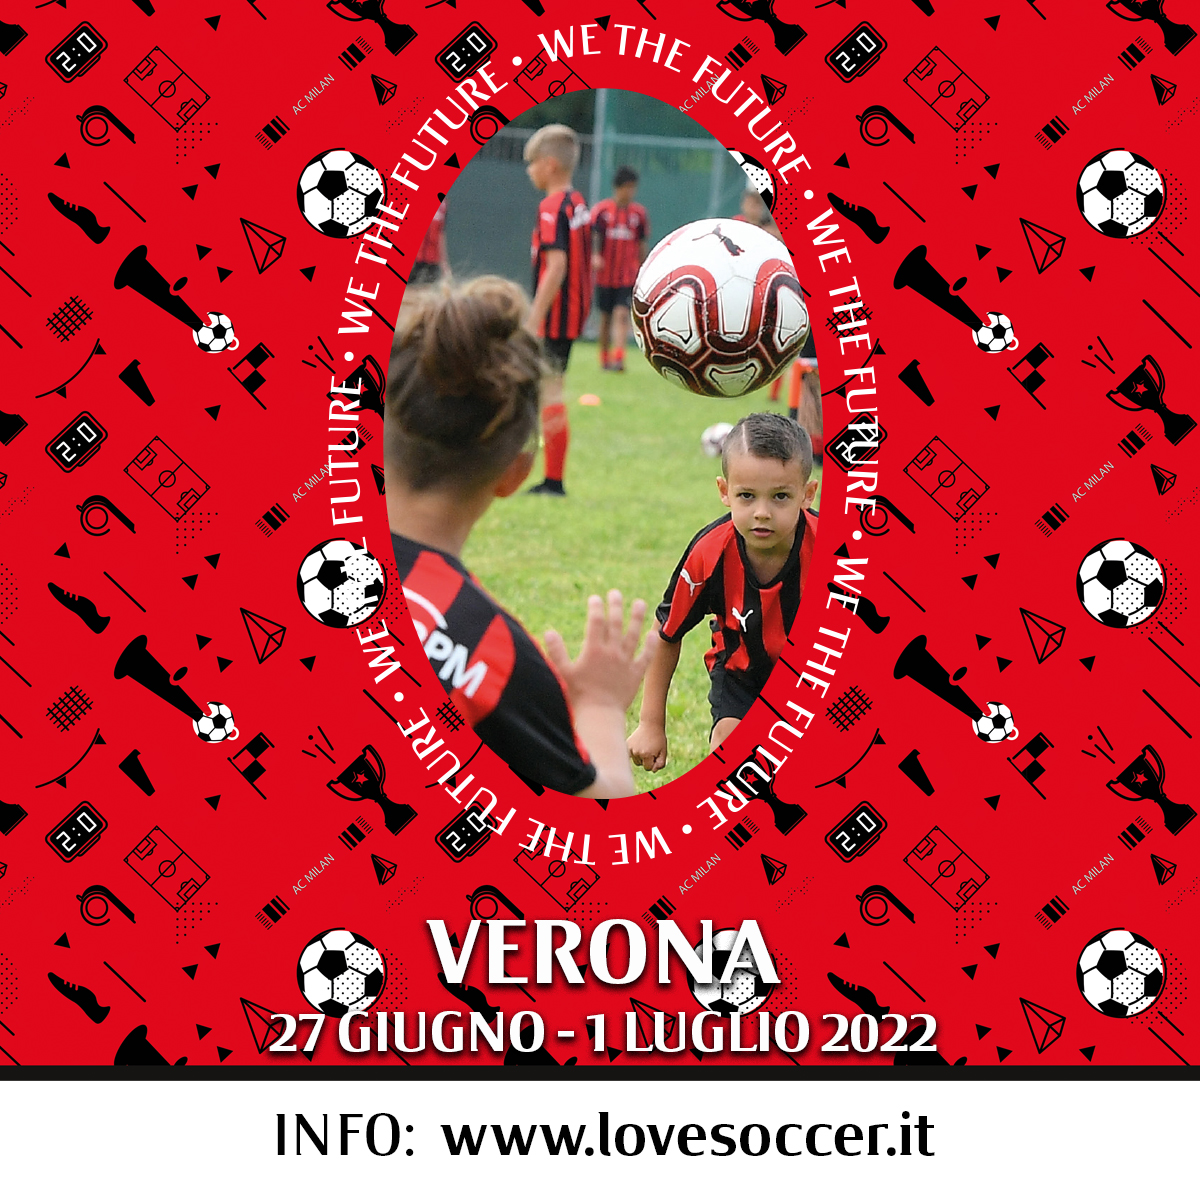 Verona 27 giugno – 1 luglio 2022